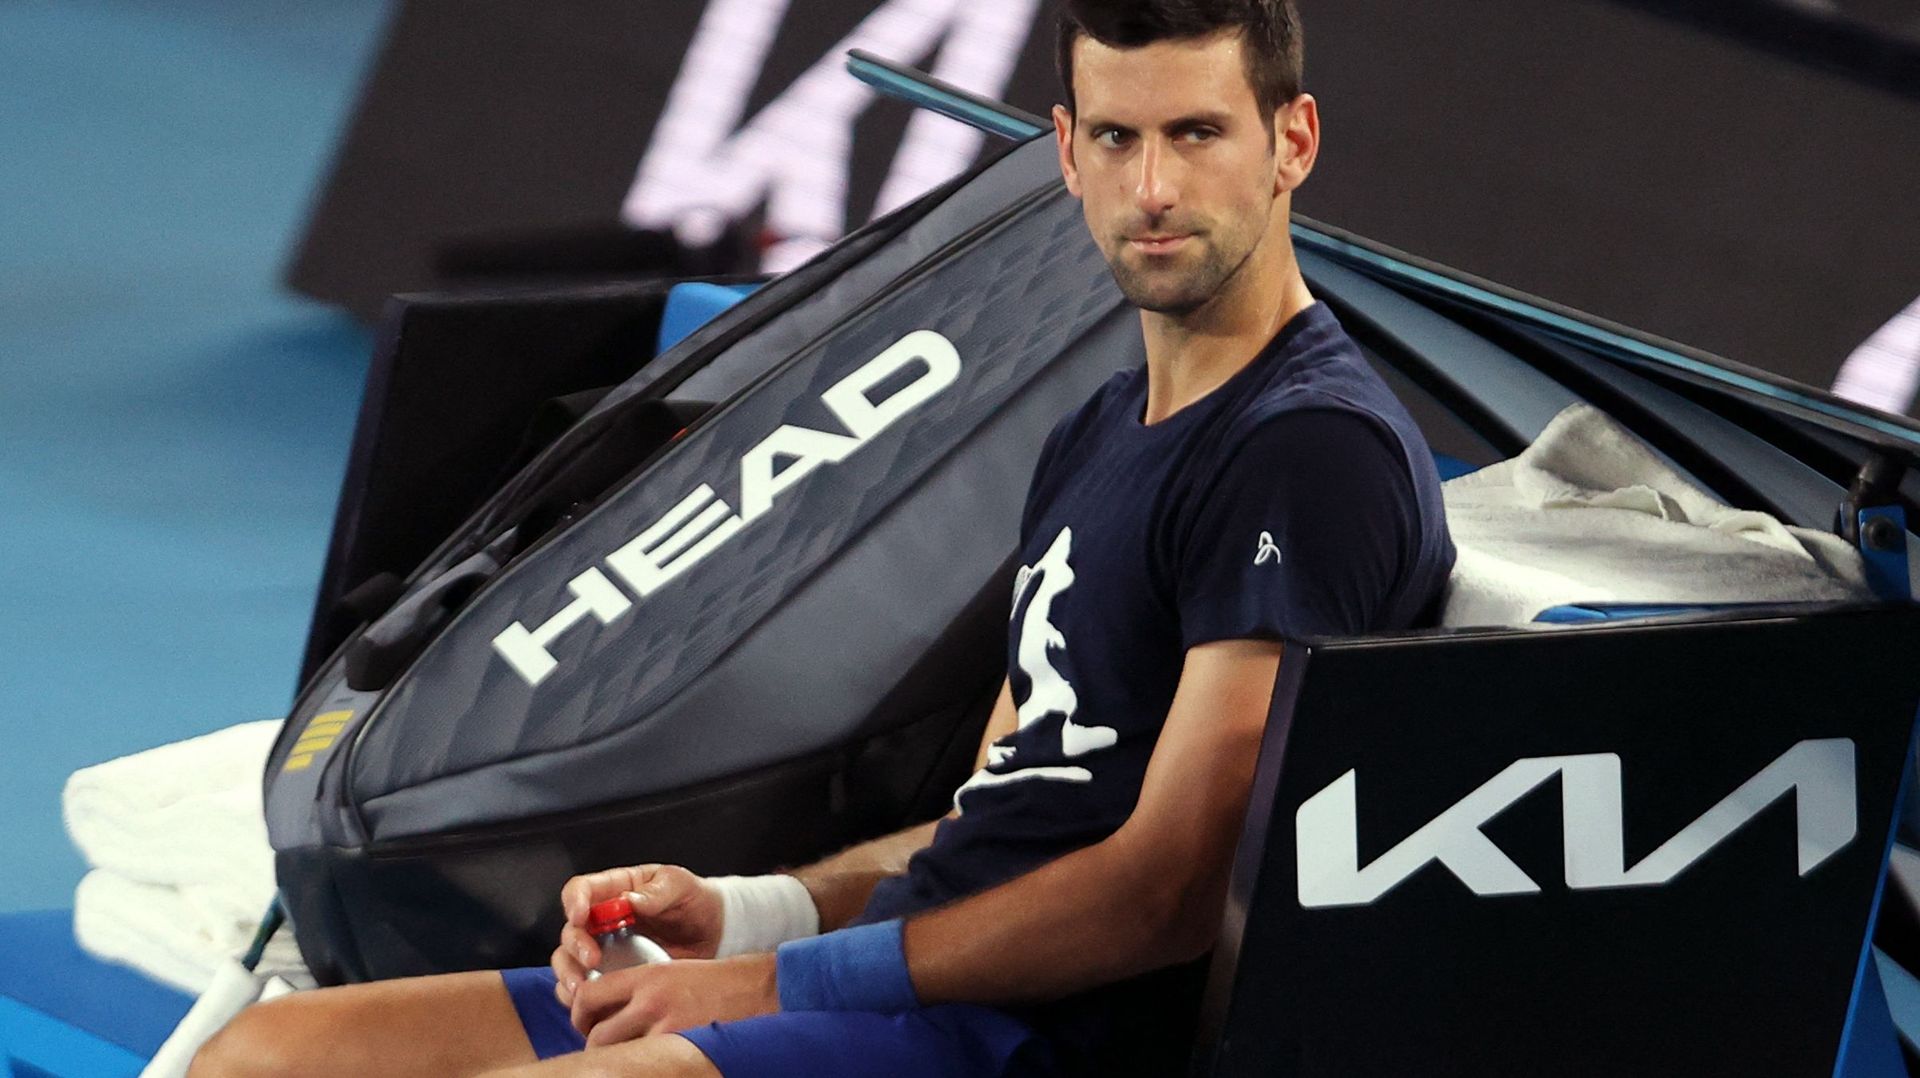 Tennis - Novak Djokovic à l'entraînement quelques jours avant d'être expulsé d'Australie. Le Serbe, N.1 mondial, s'est inscrit au tournoi ATP 500 de Dubai, prévu fin février.
